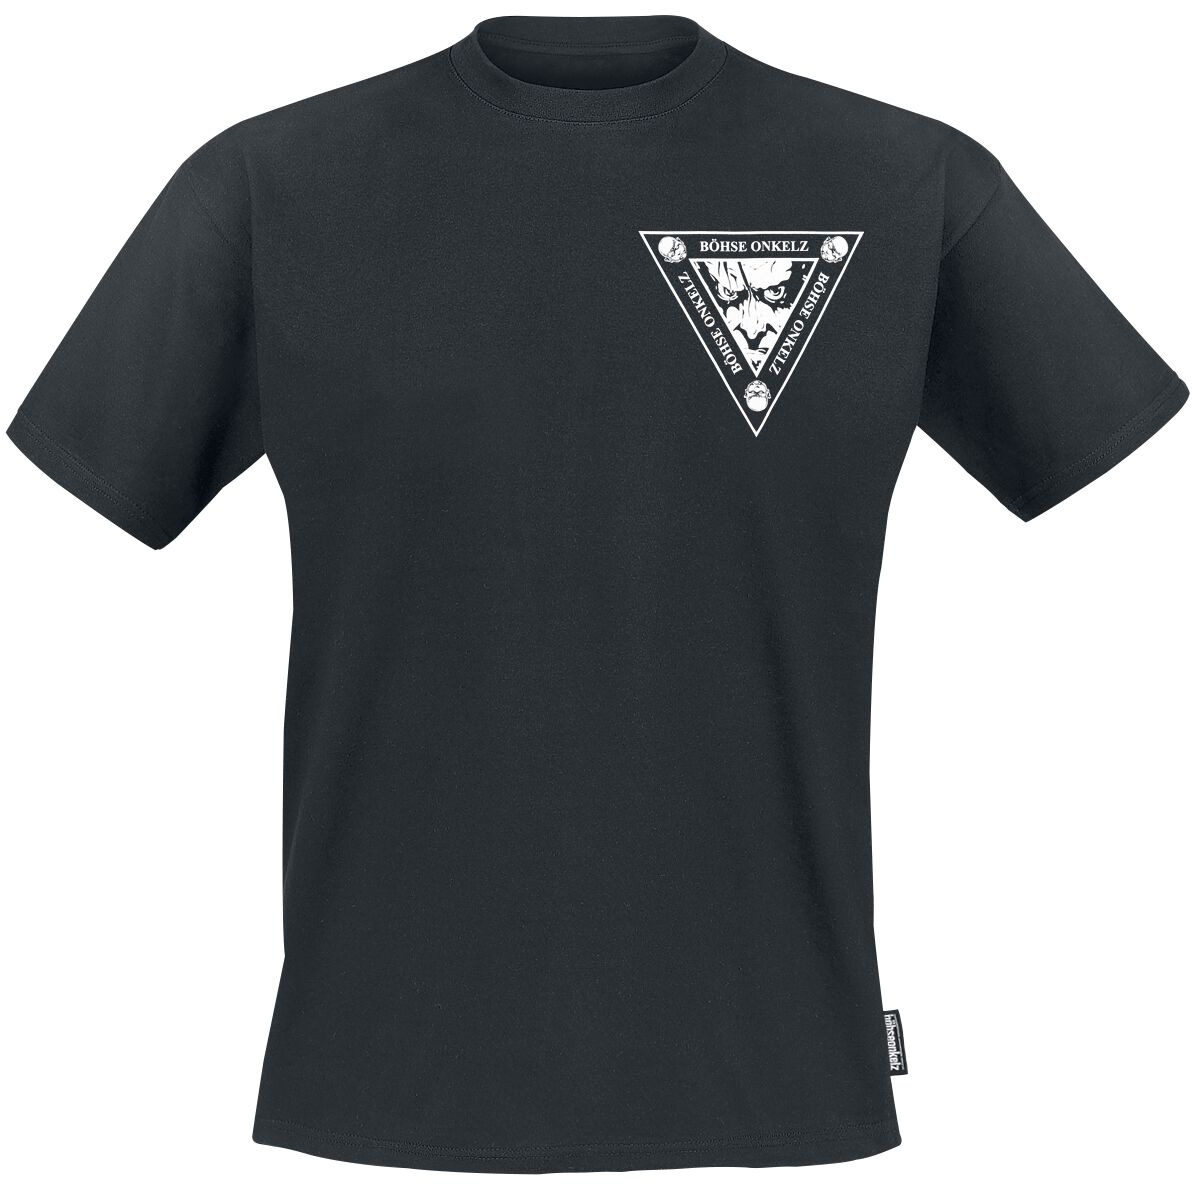 Böhse Onkelz T-Shirt - Es ist soweit 1 - S bis 5XL - für Männer - Größe S - schwarz  - Lizenziertes Merchandise!